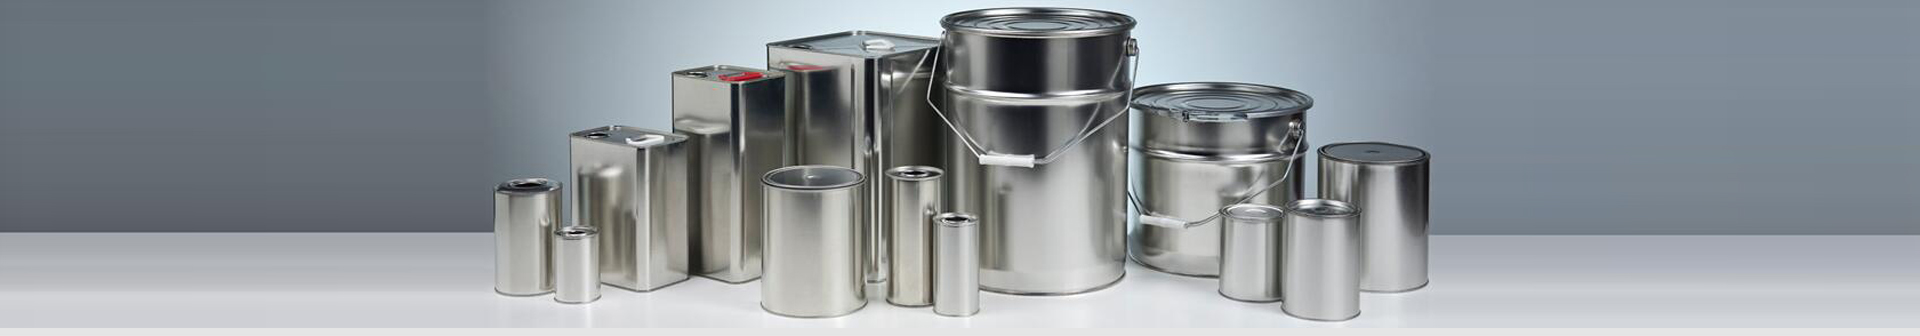 金属罐制罐设备、金属罐制罐机械、金属罐制罐生产线